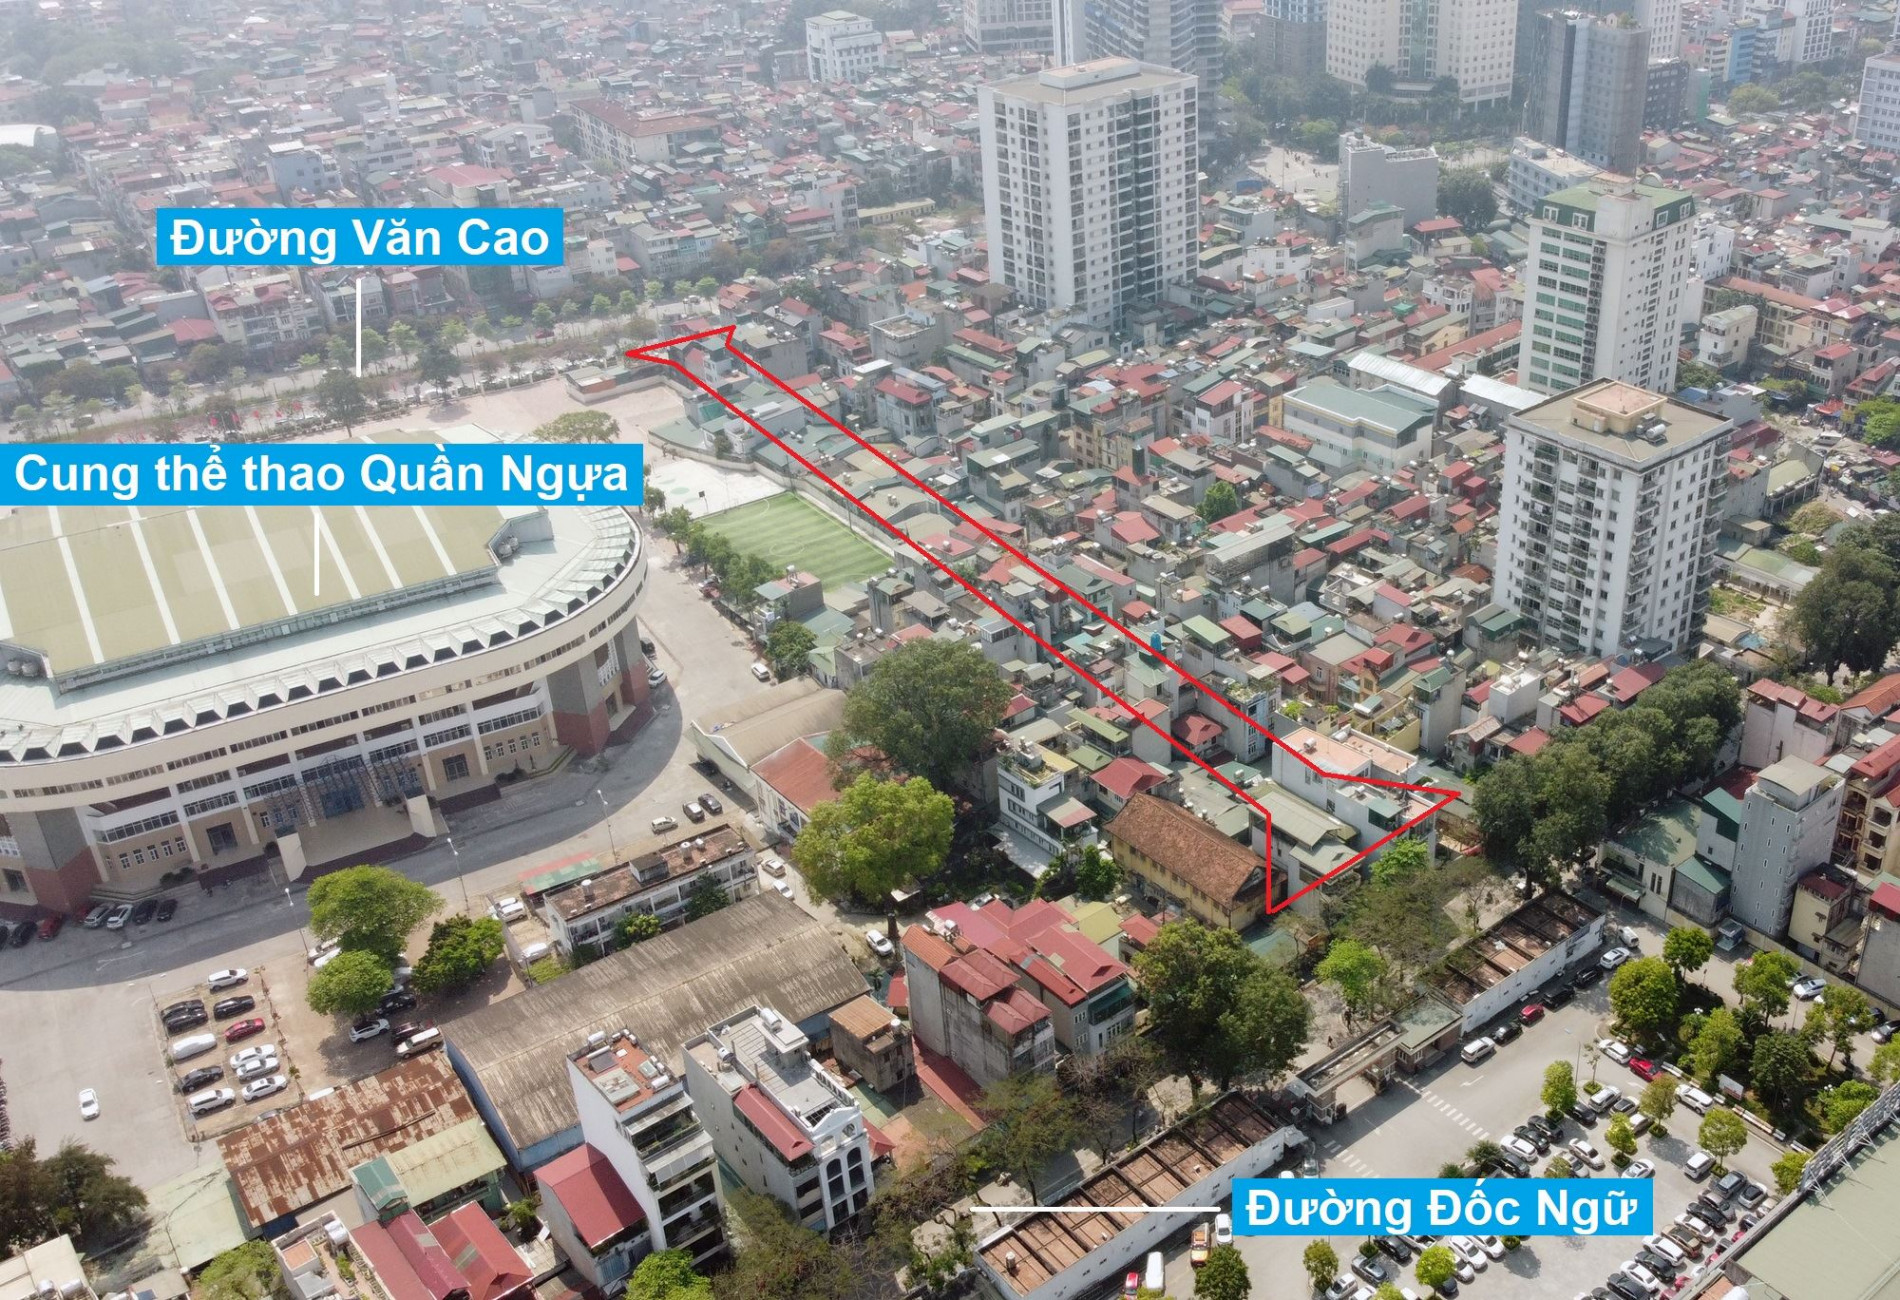 Những khu đất sắp thu hồi để mở đường ở phường Liễu Giai, Ba Đình, Hà Nội (phần 1)